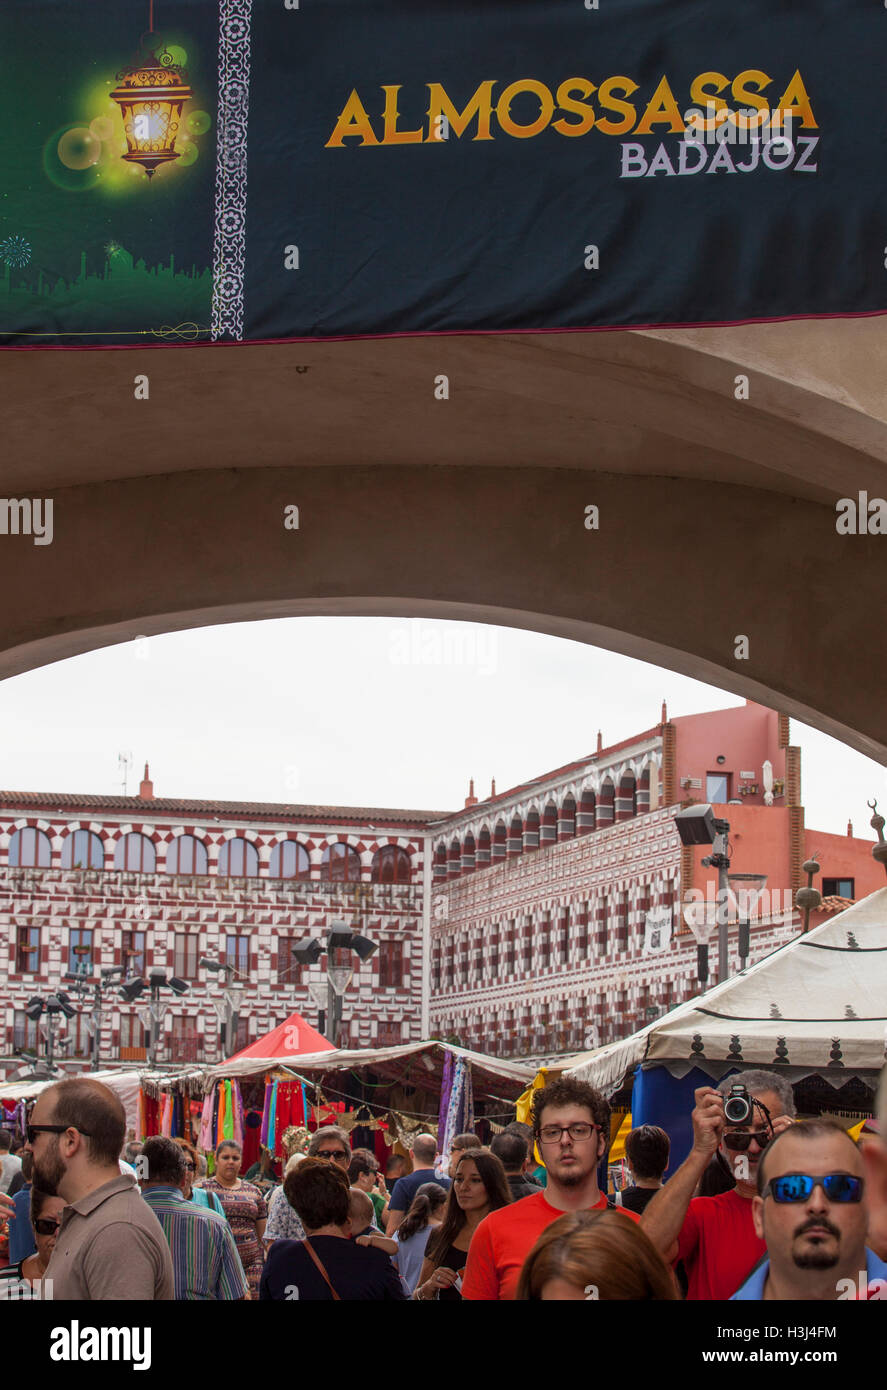 Badajoz, Espagne - 25 septembre 2016 : foule visitant Almossassa tentes du festival. Festival de la Culture Almossassa Banque D'Images